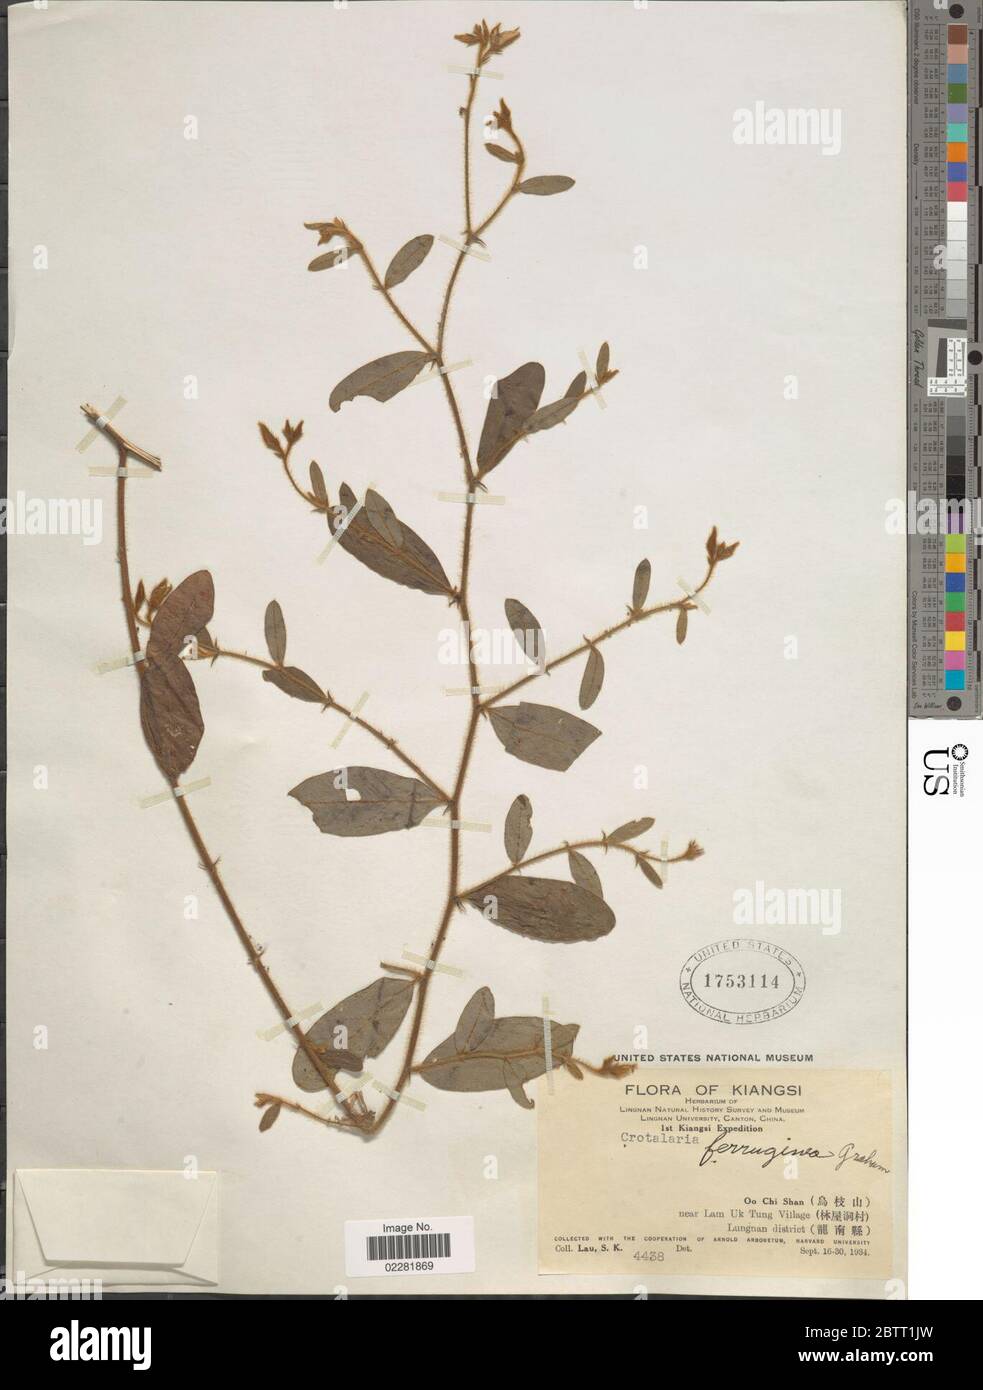 Crotalaria ferruginea Graham ex Benth. Stock Photo